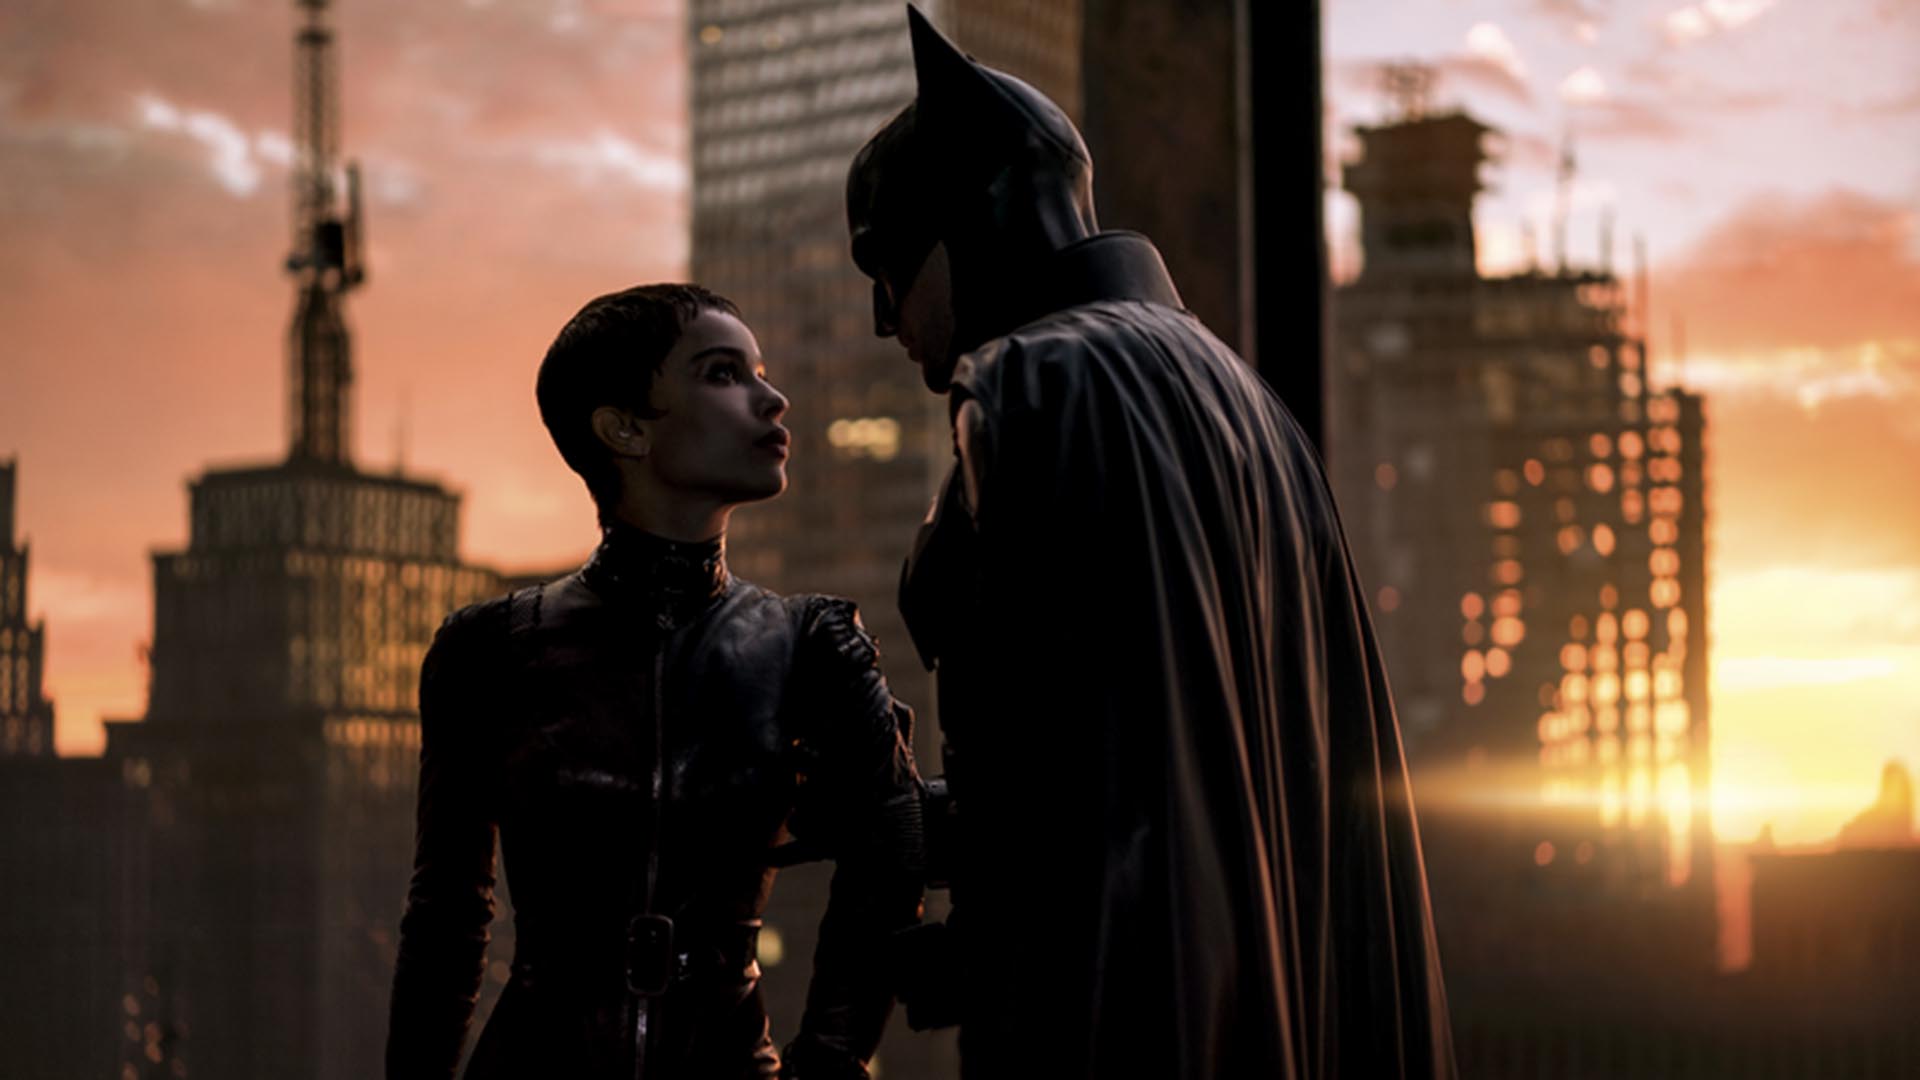 The Batman”: Gatúbela y la posibilidad de su propia serie - Infobae